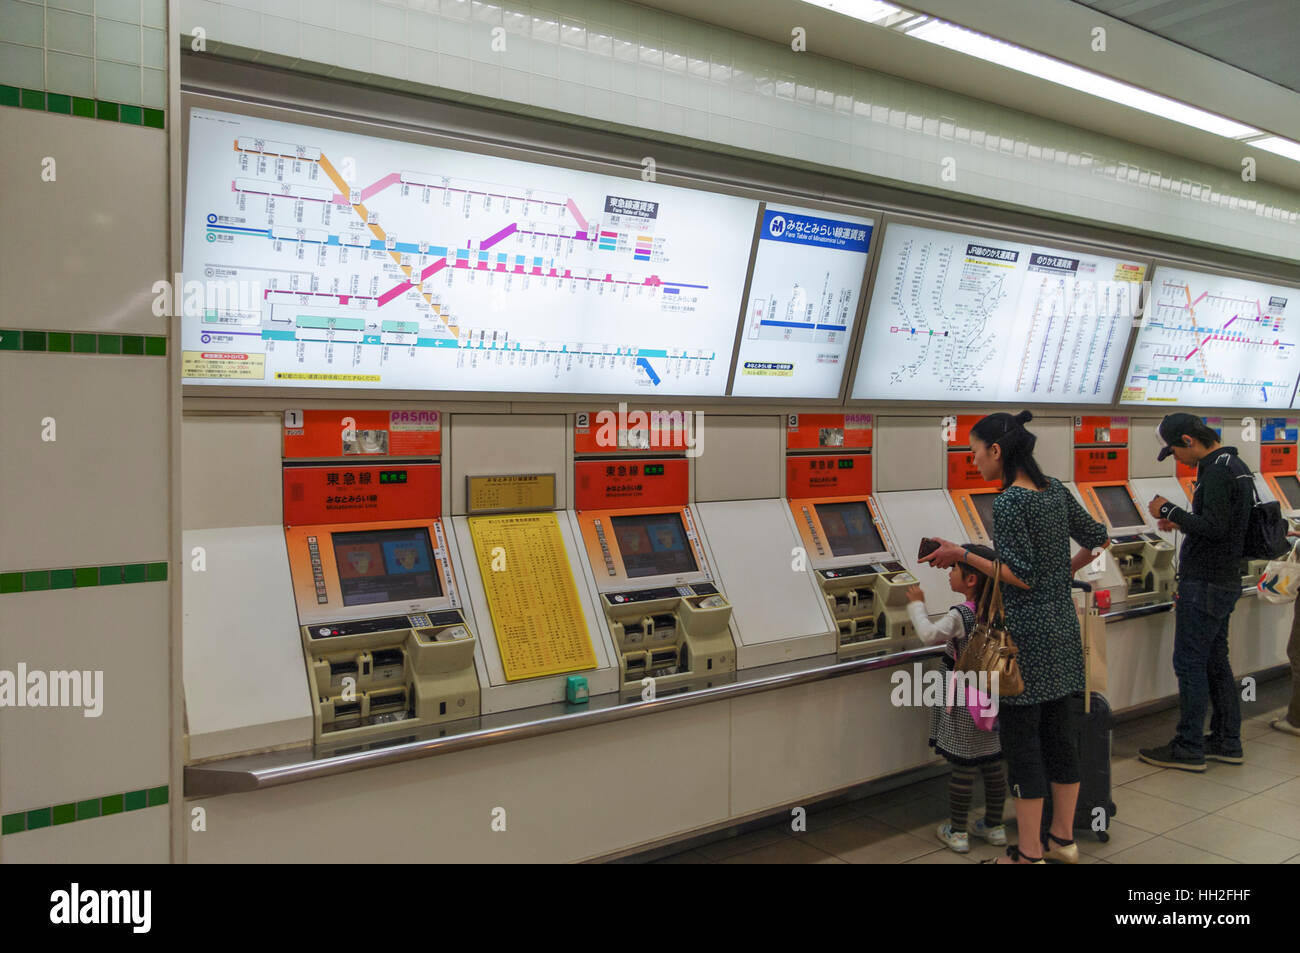 Los pasajeros compra de billetes para el metro de la línea Minatomirai en las máquinas expendedoras de billetes. Yokohama, Japón. Foto de stock